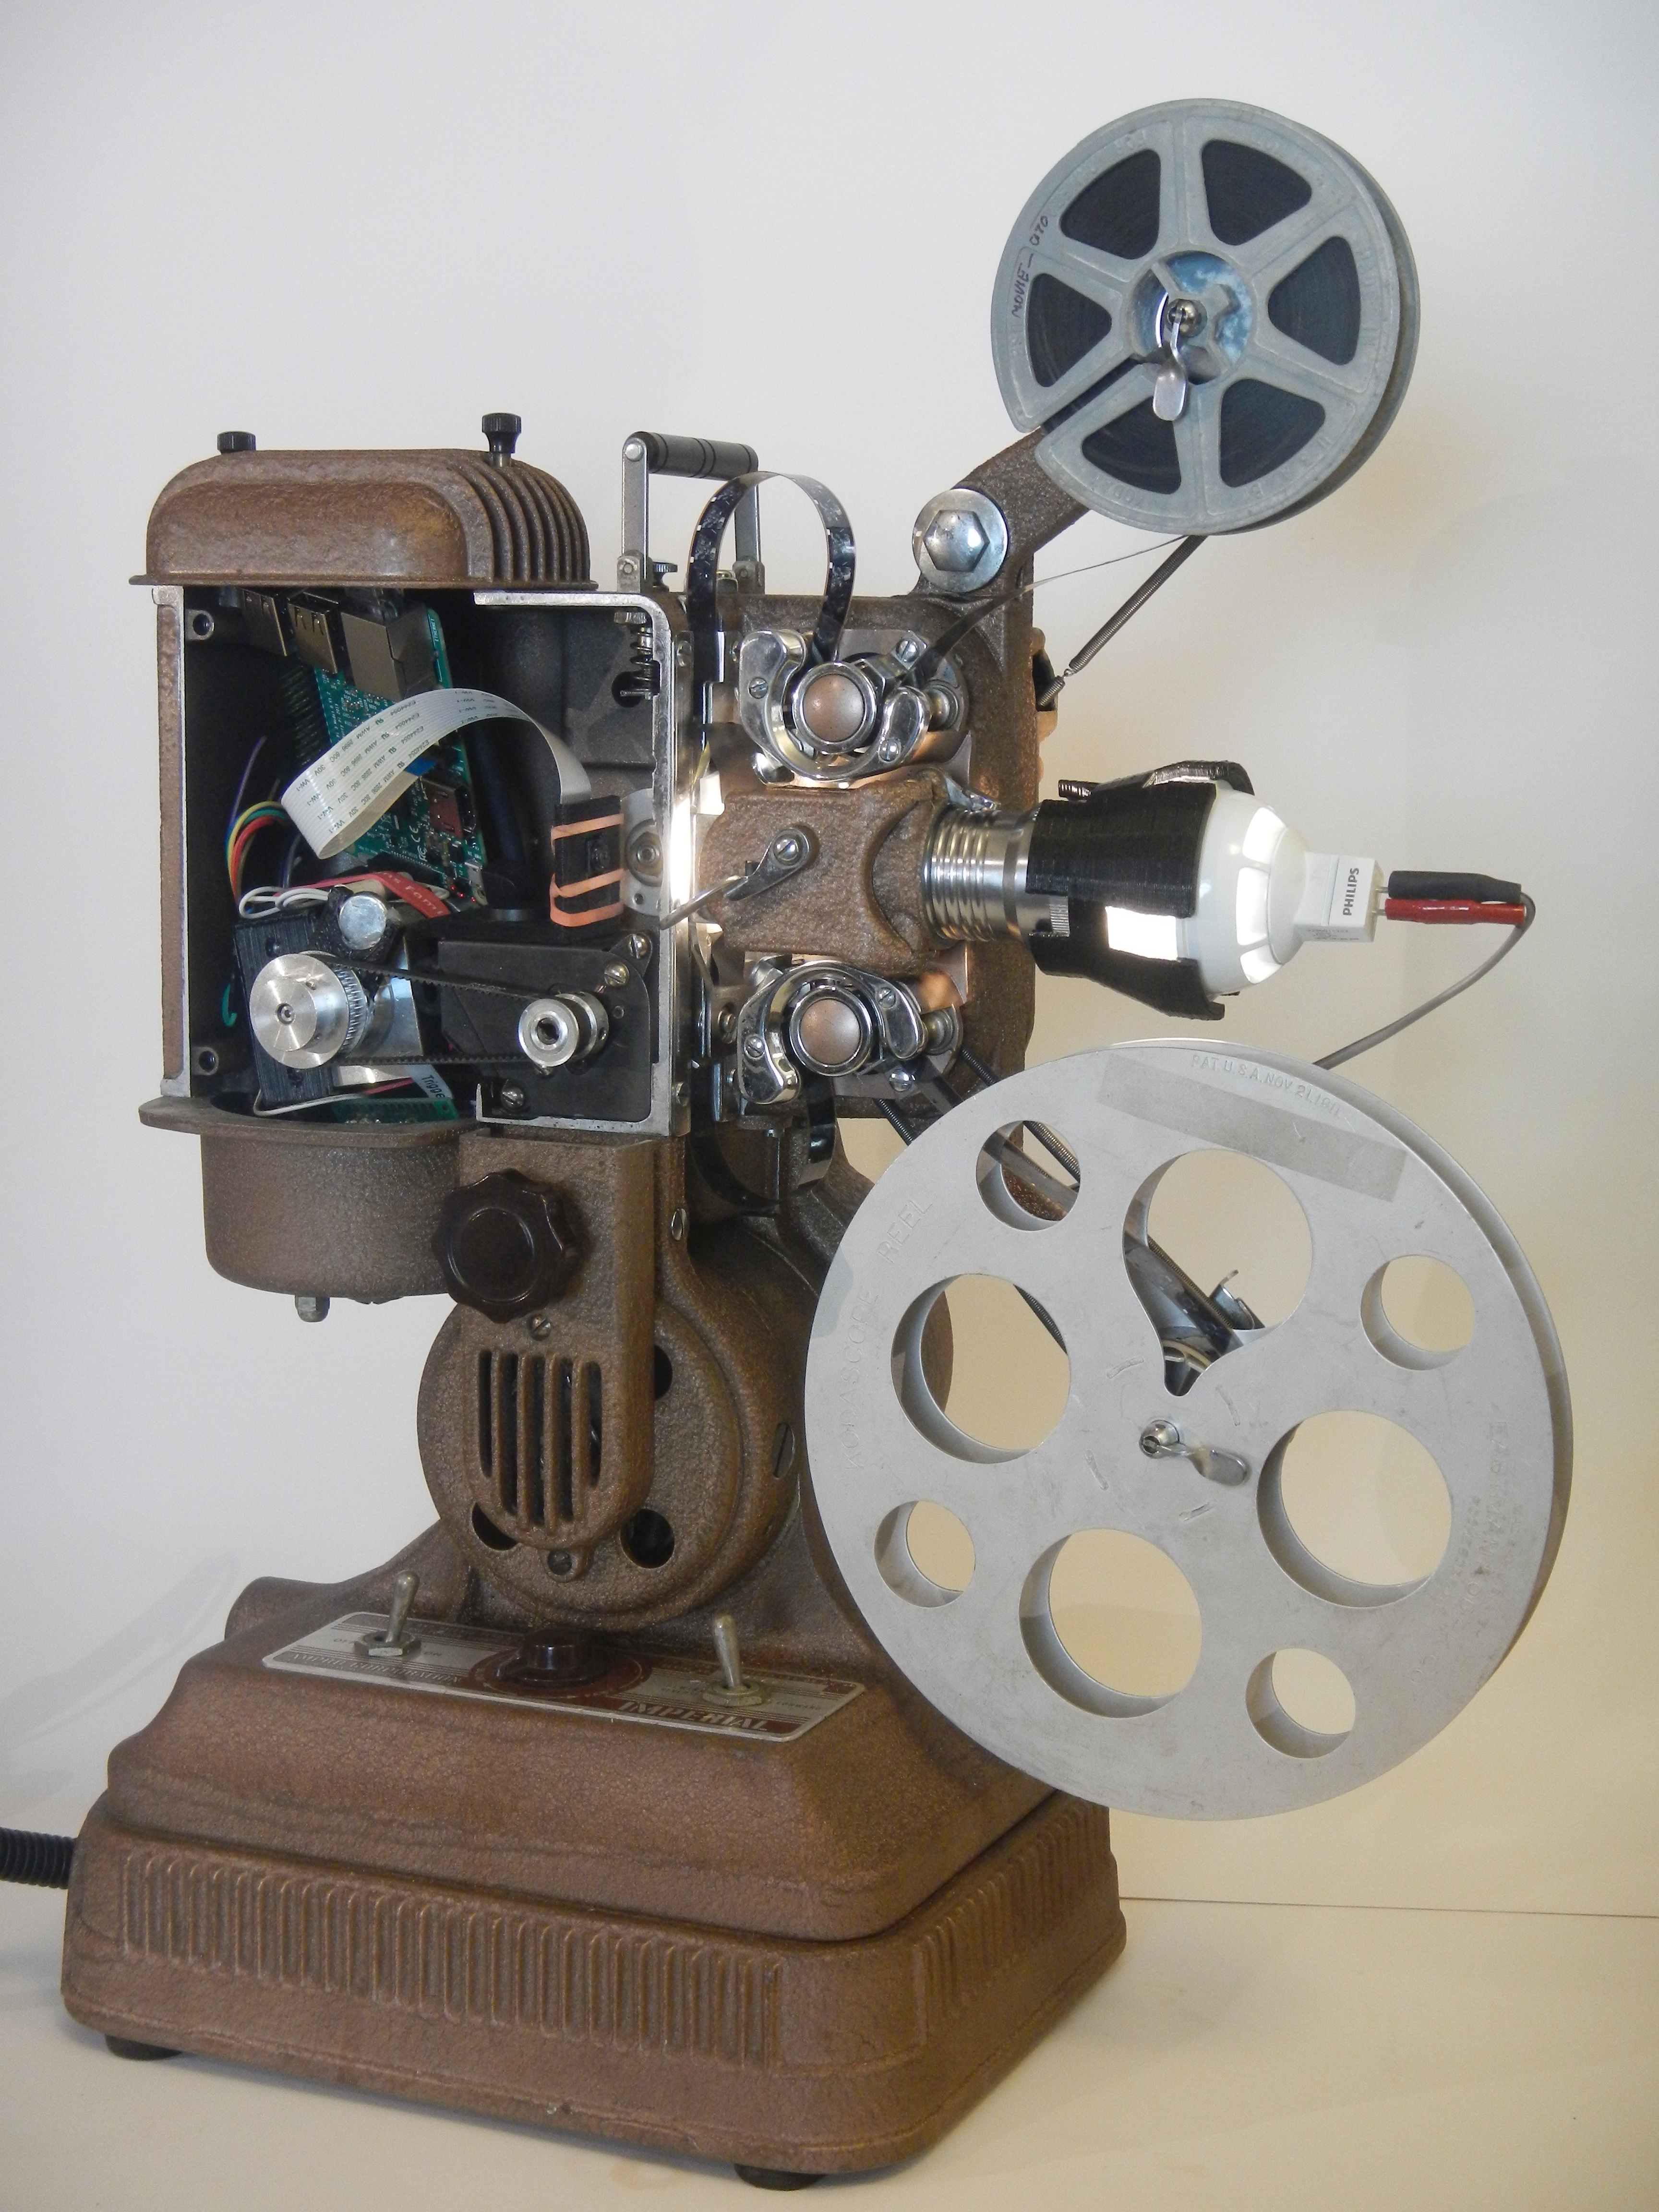 DIY Vintage Film Restoration with a Pi or DSLR